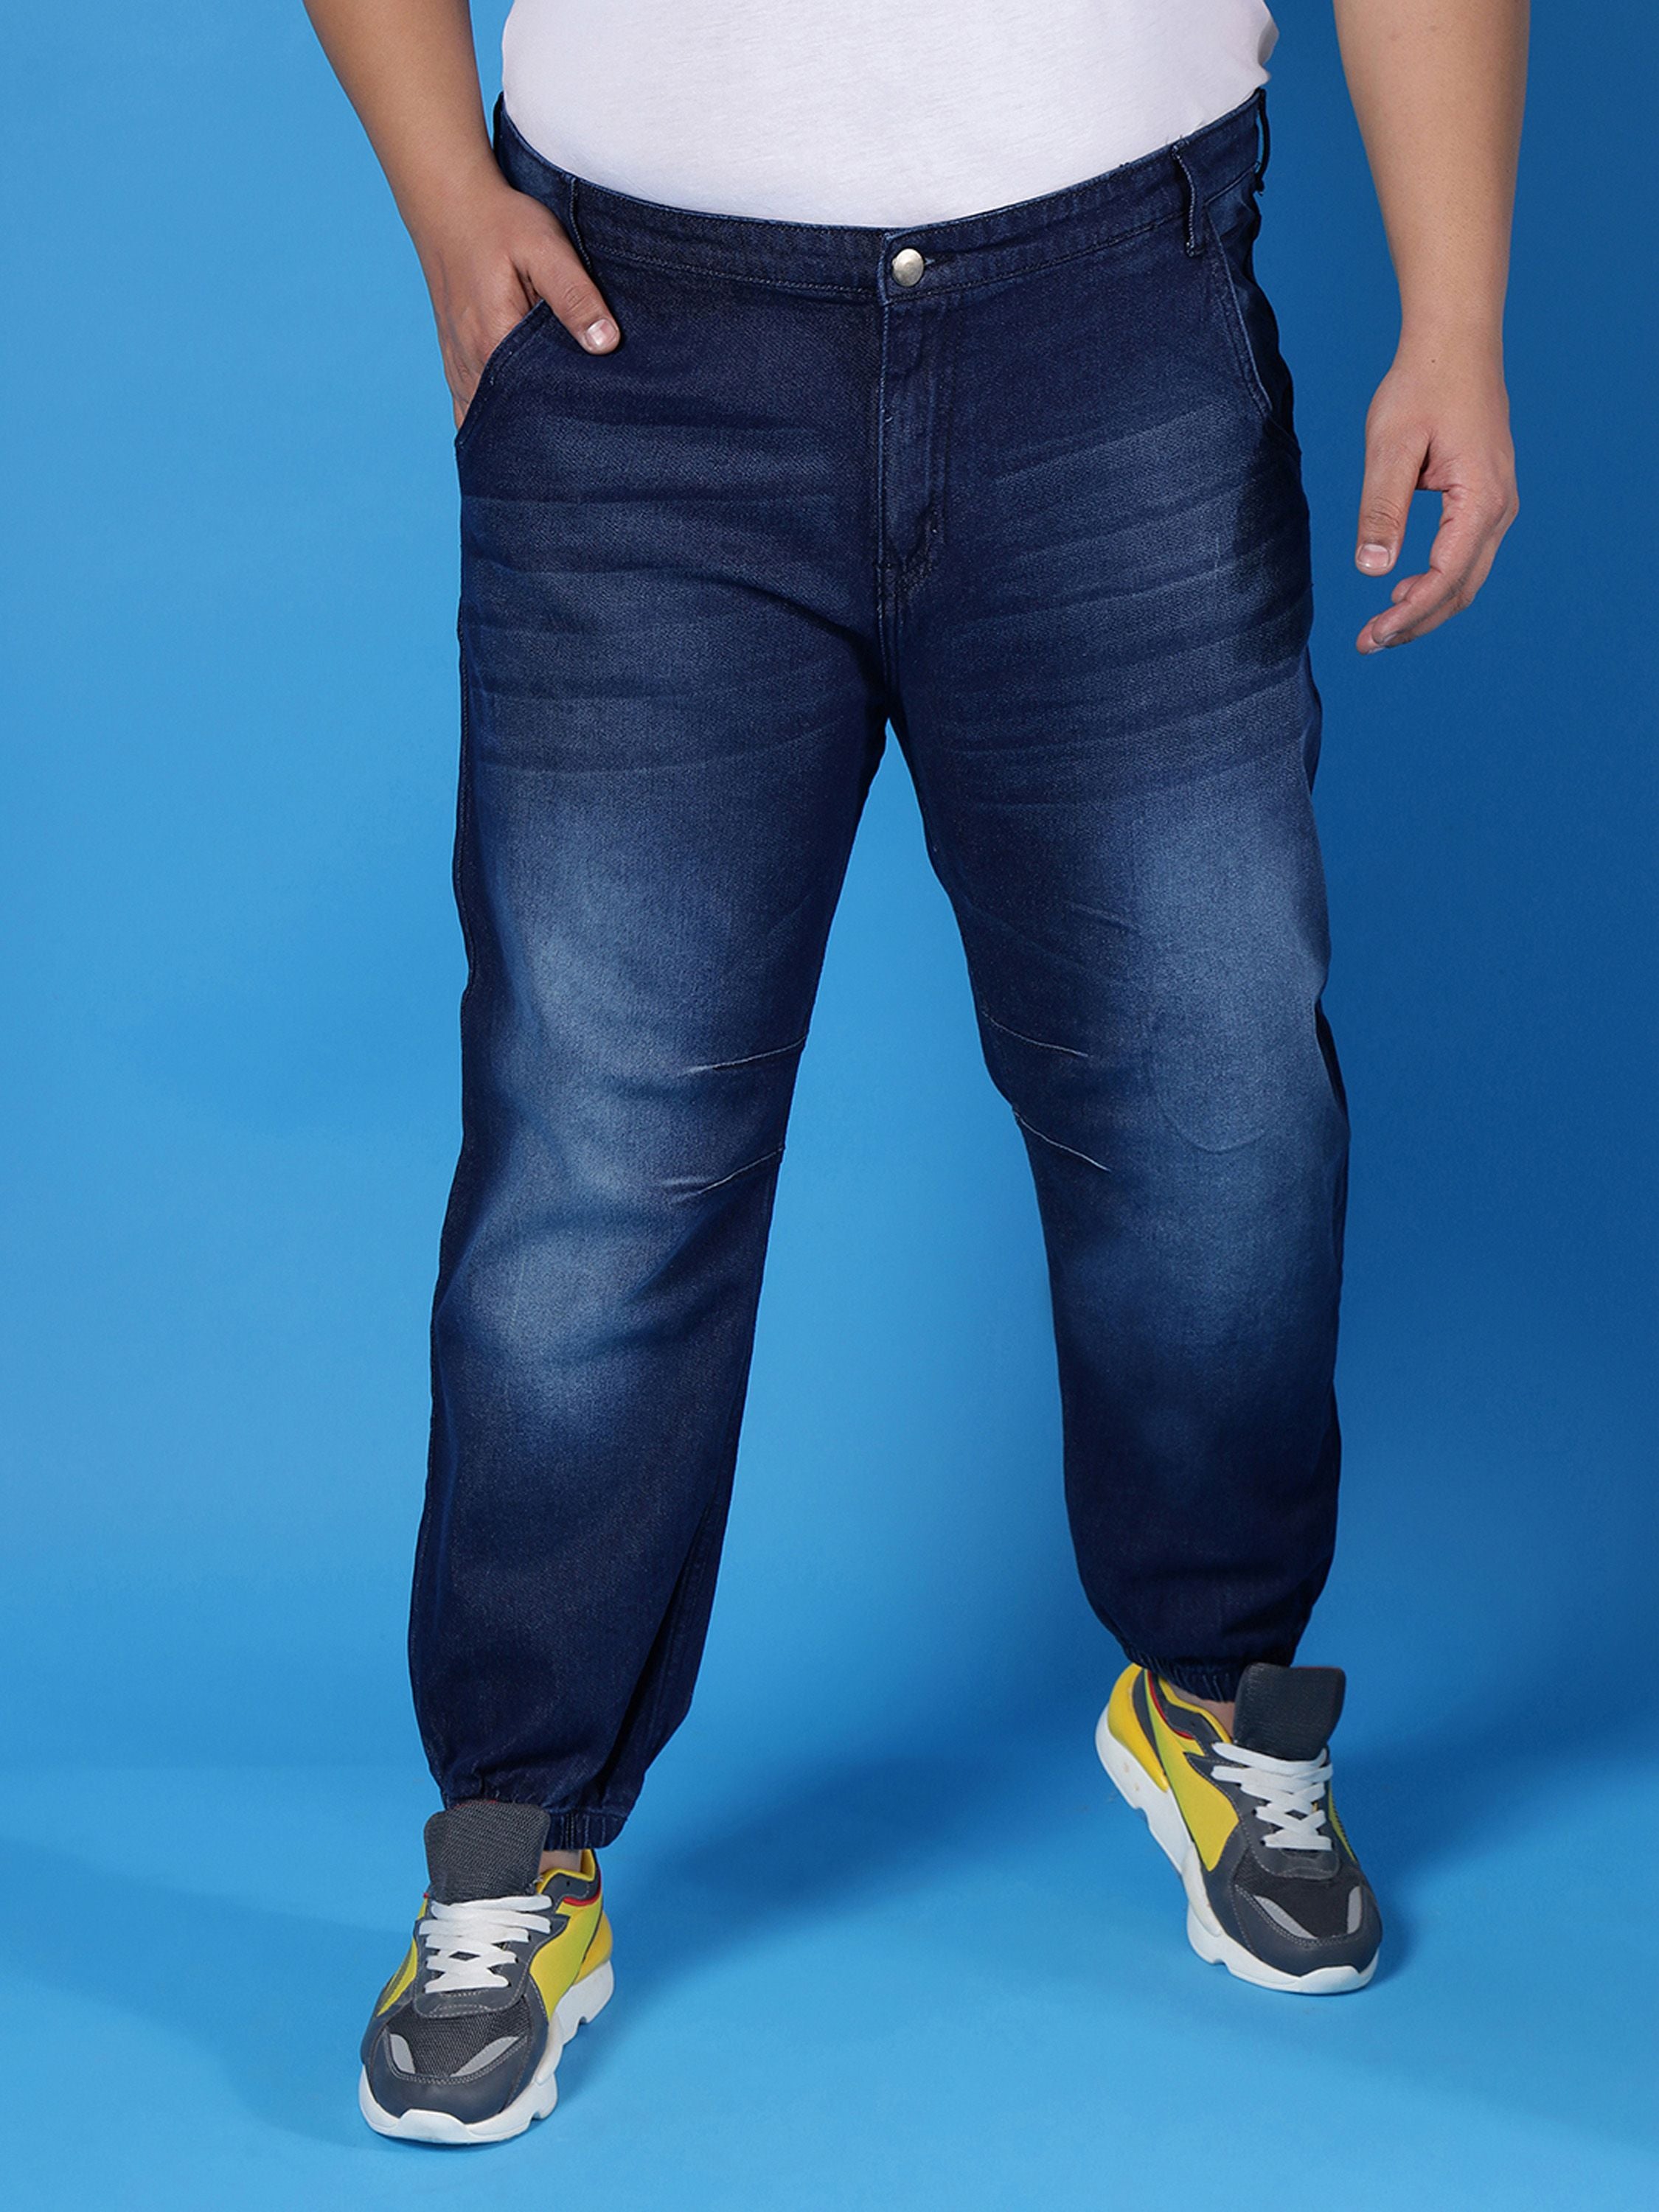 Plus Men Solid Stylish Casual Denim Jeans Blue